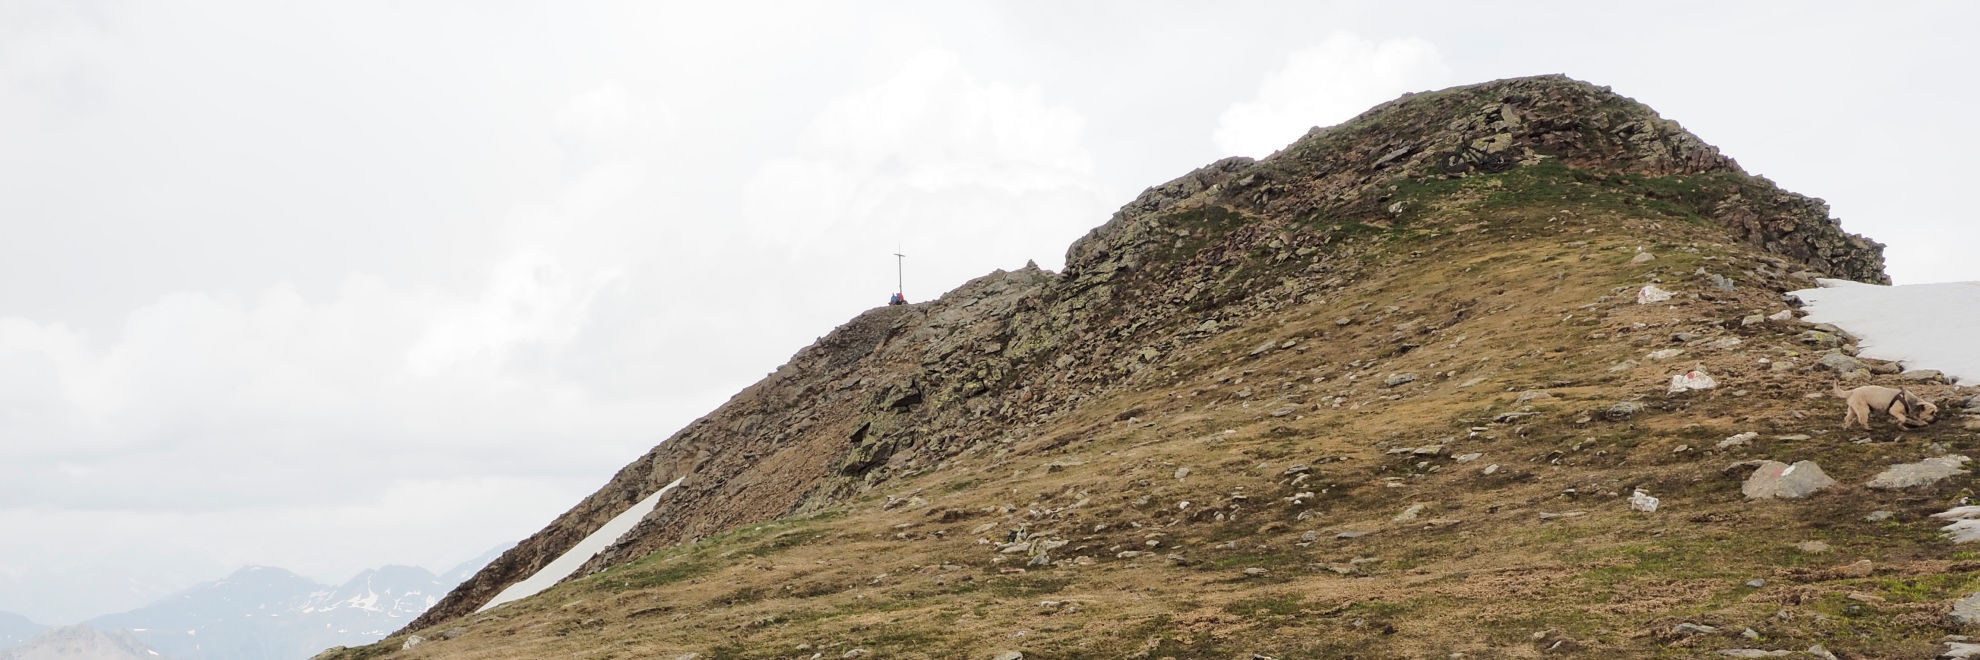 Reinswald: Wanderweg 8 zum Plankenhorn Gipfel